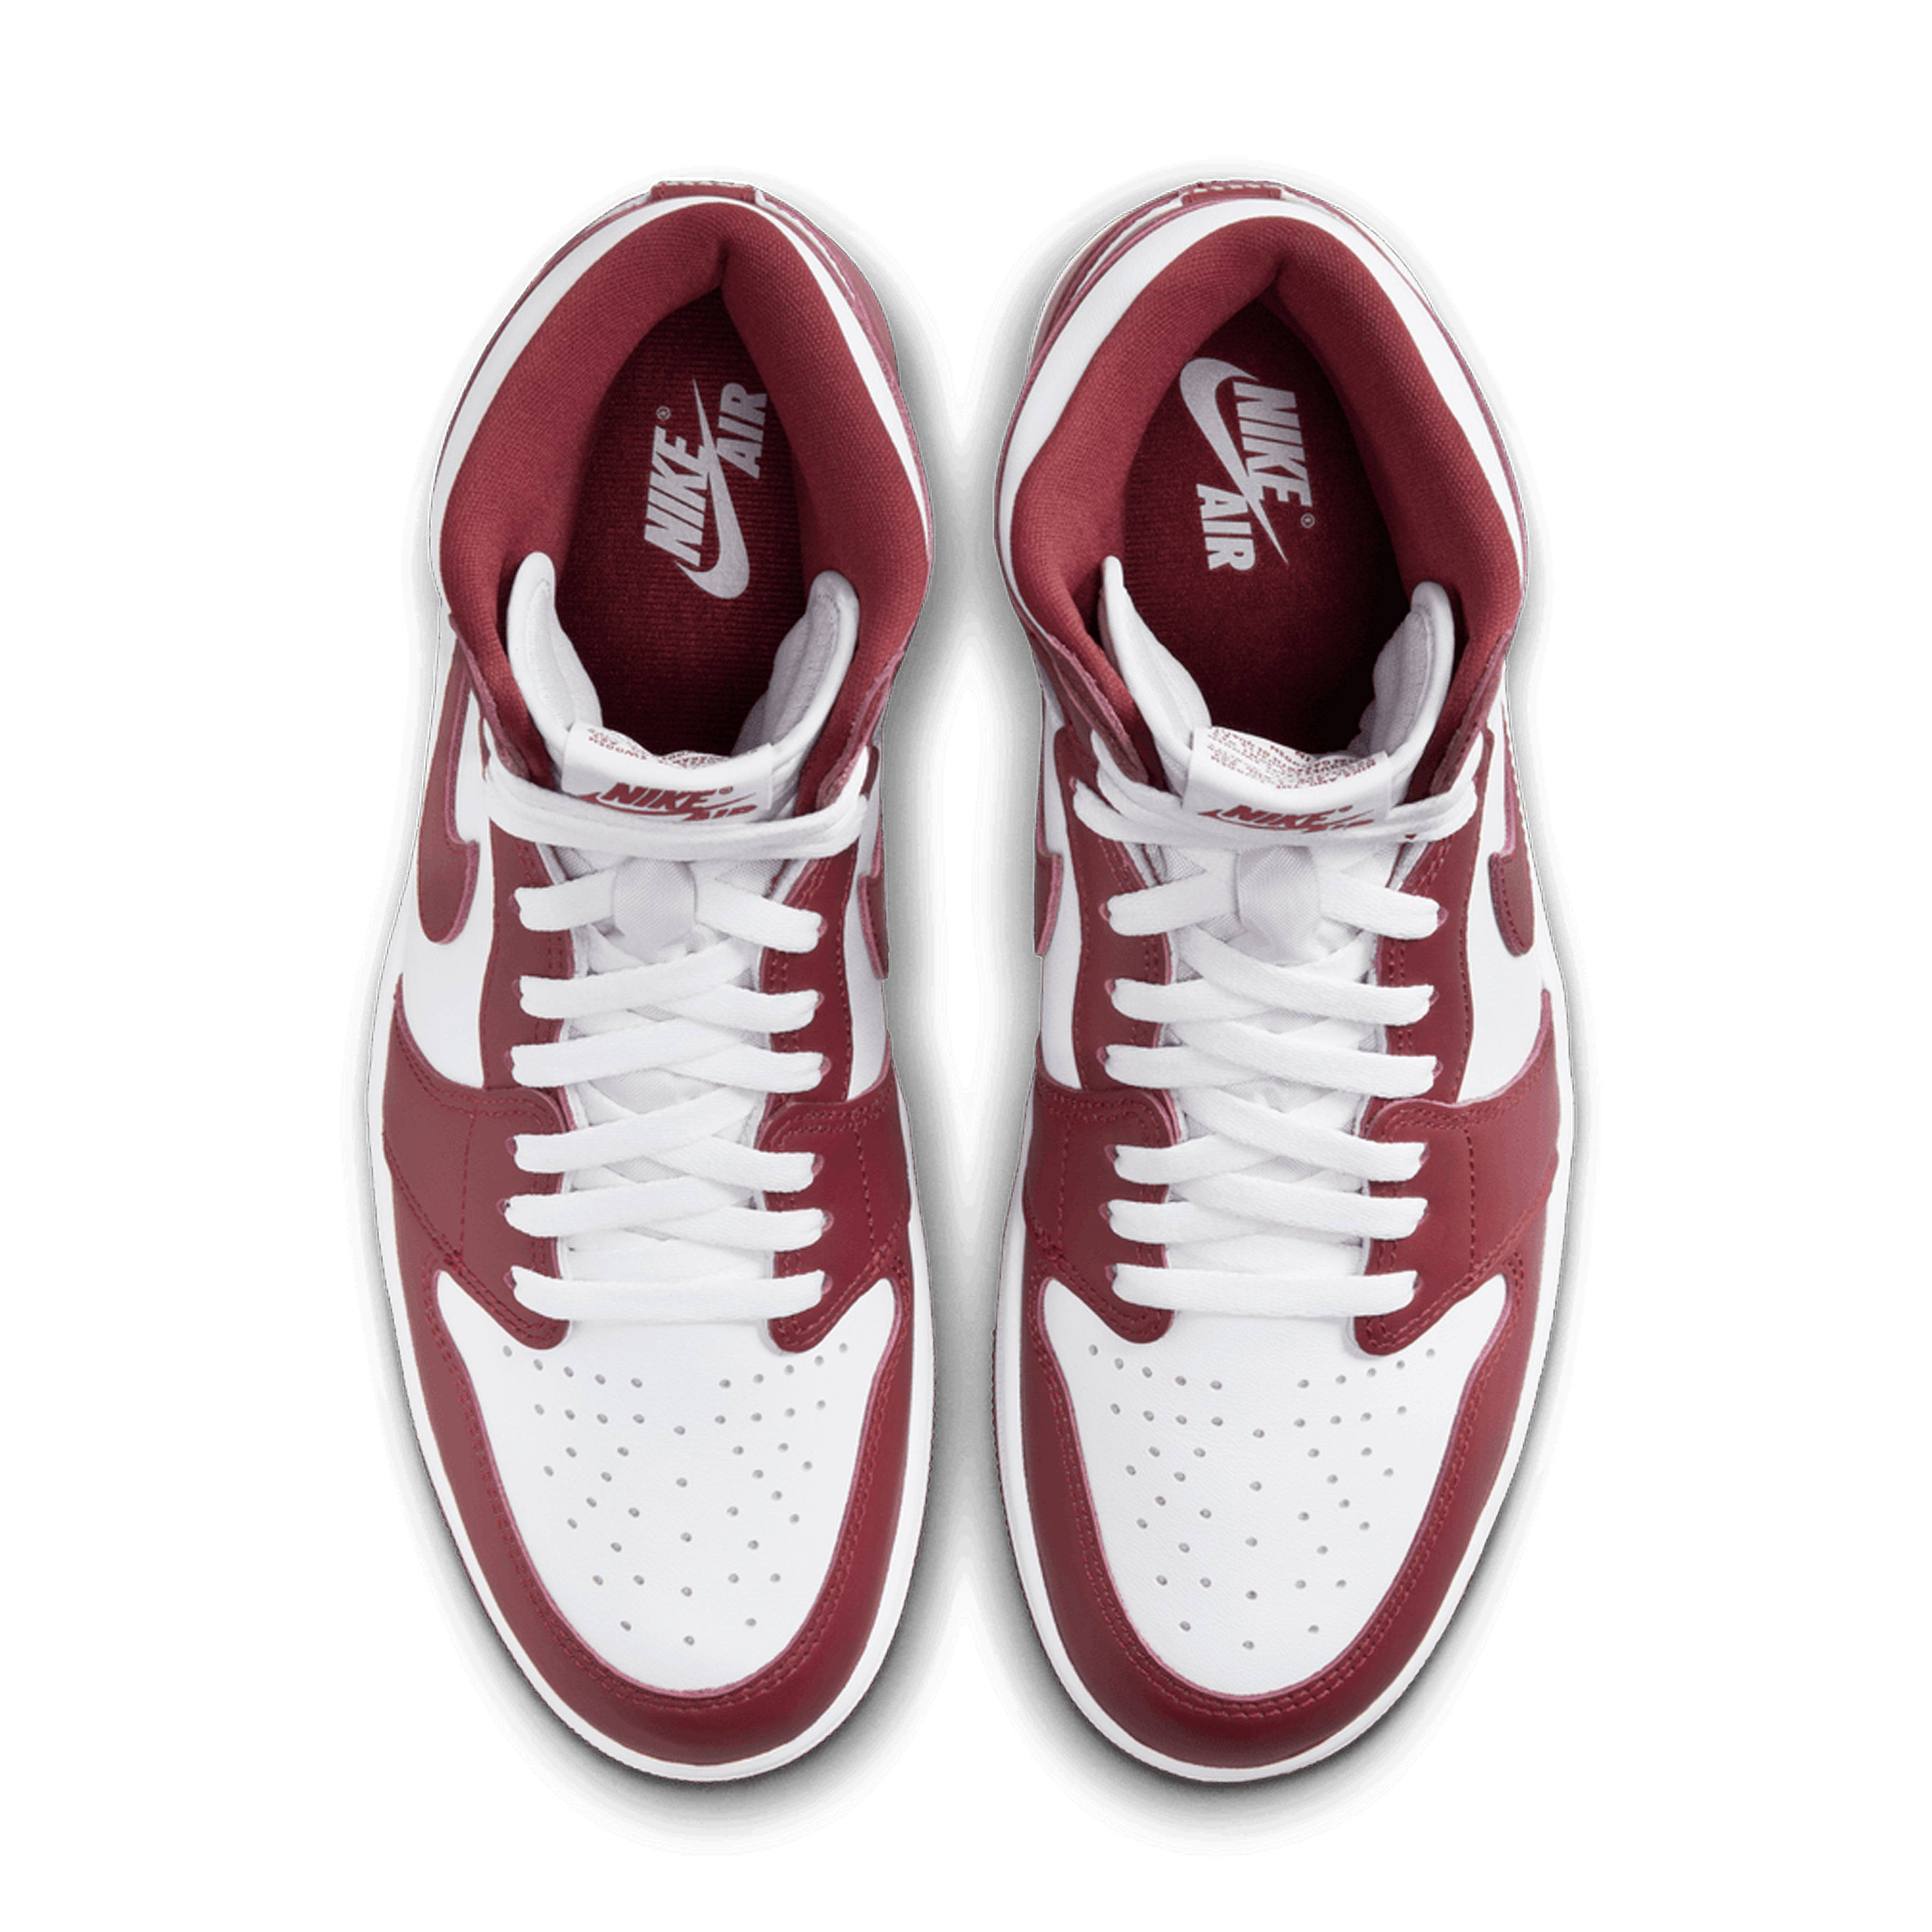 Nike - Air Jordan 1 Retro High OG Artisanal Red Sneakers - (DZ5485-160)